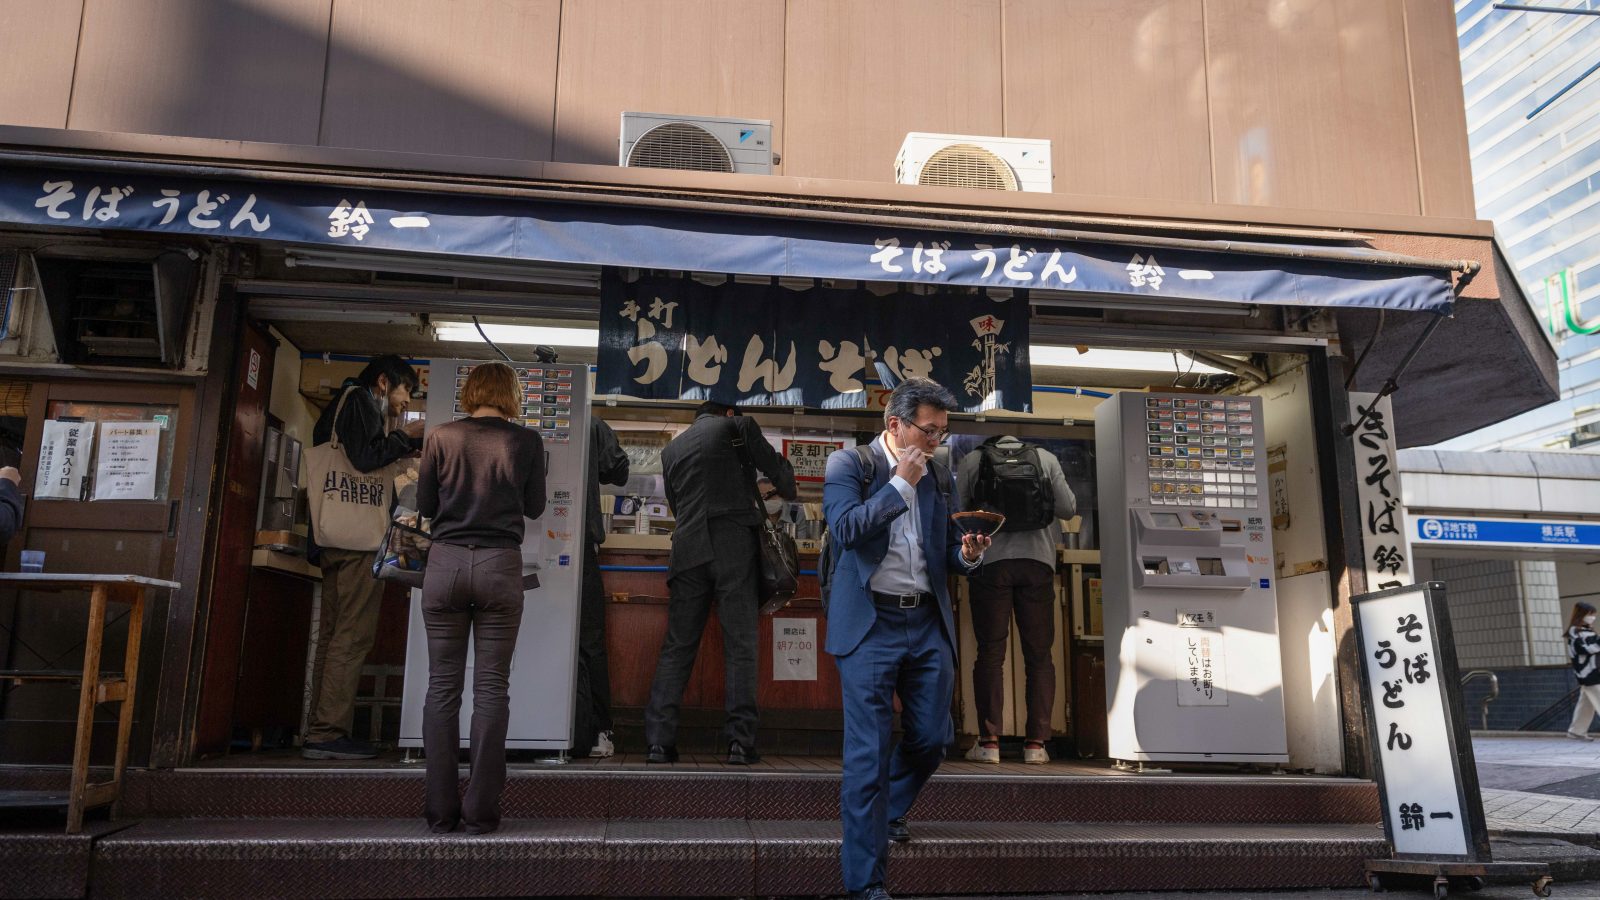 英紙「物価高のなか、日本のサラリーマンは『激安ランチ』を食べている」